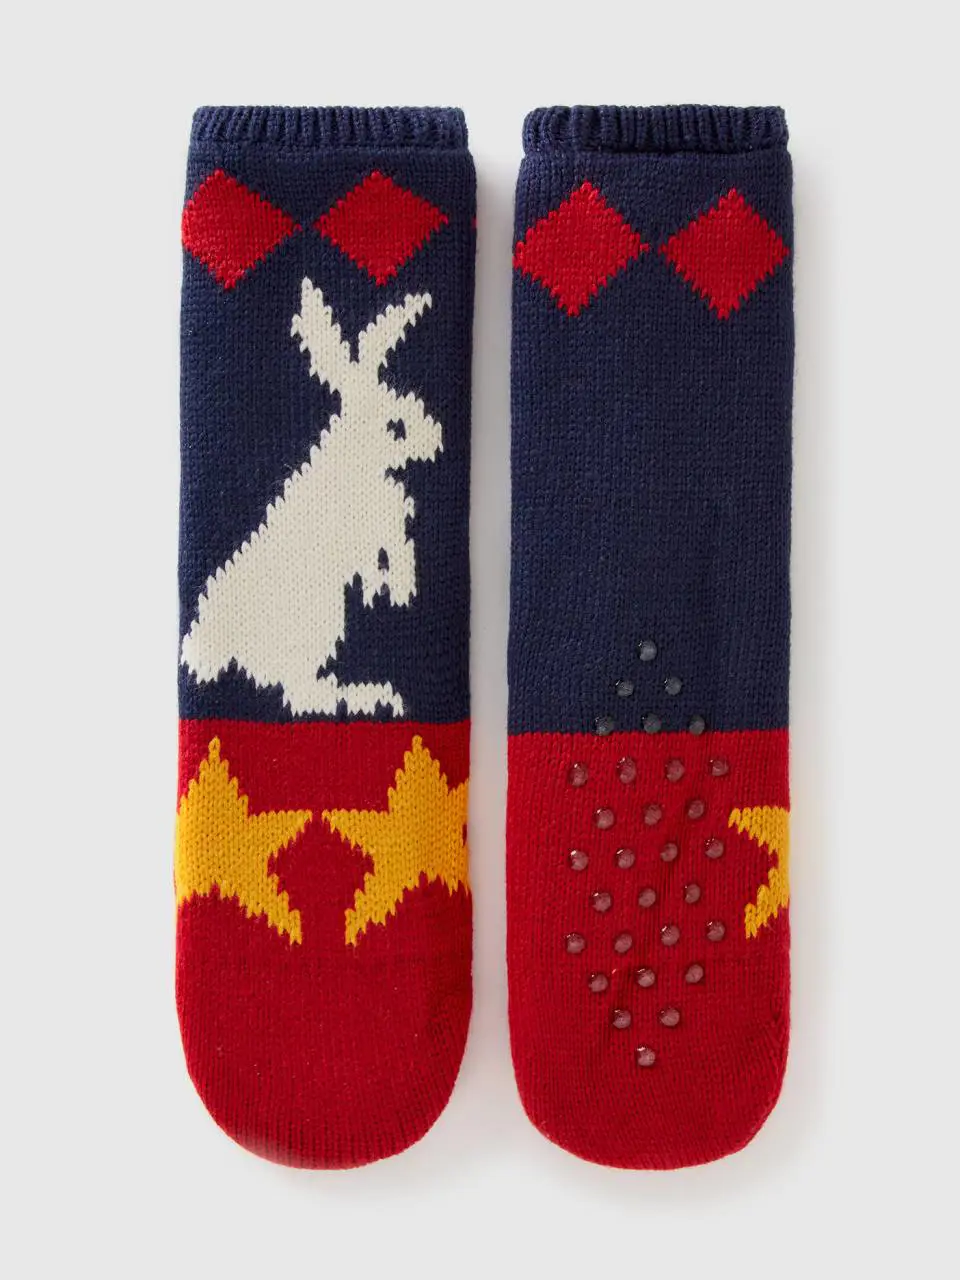 Benetton short patterned knit socks. 1